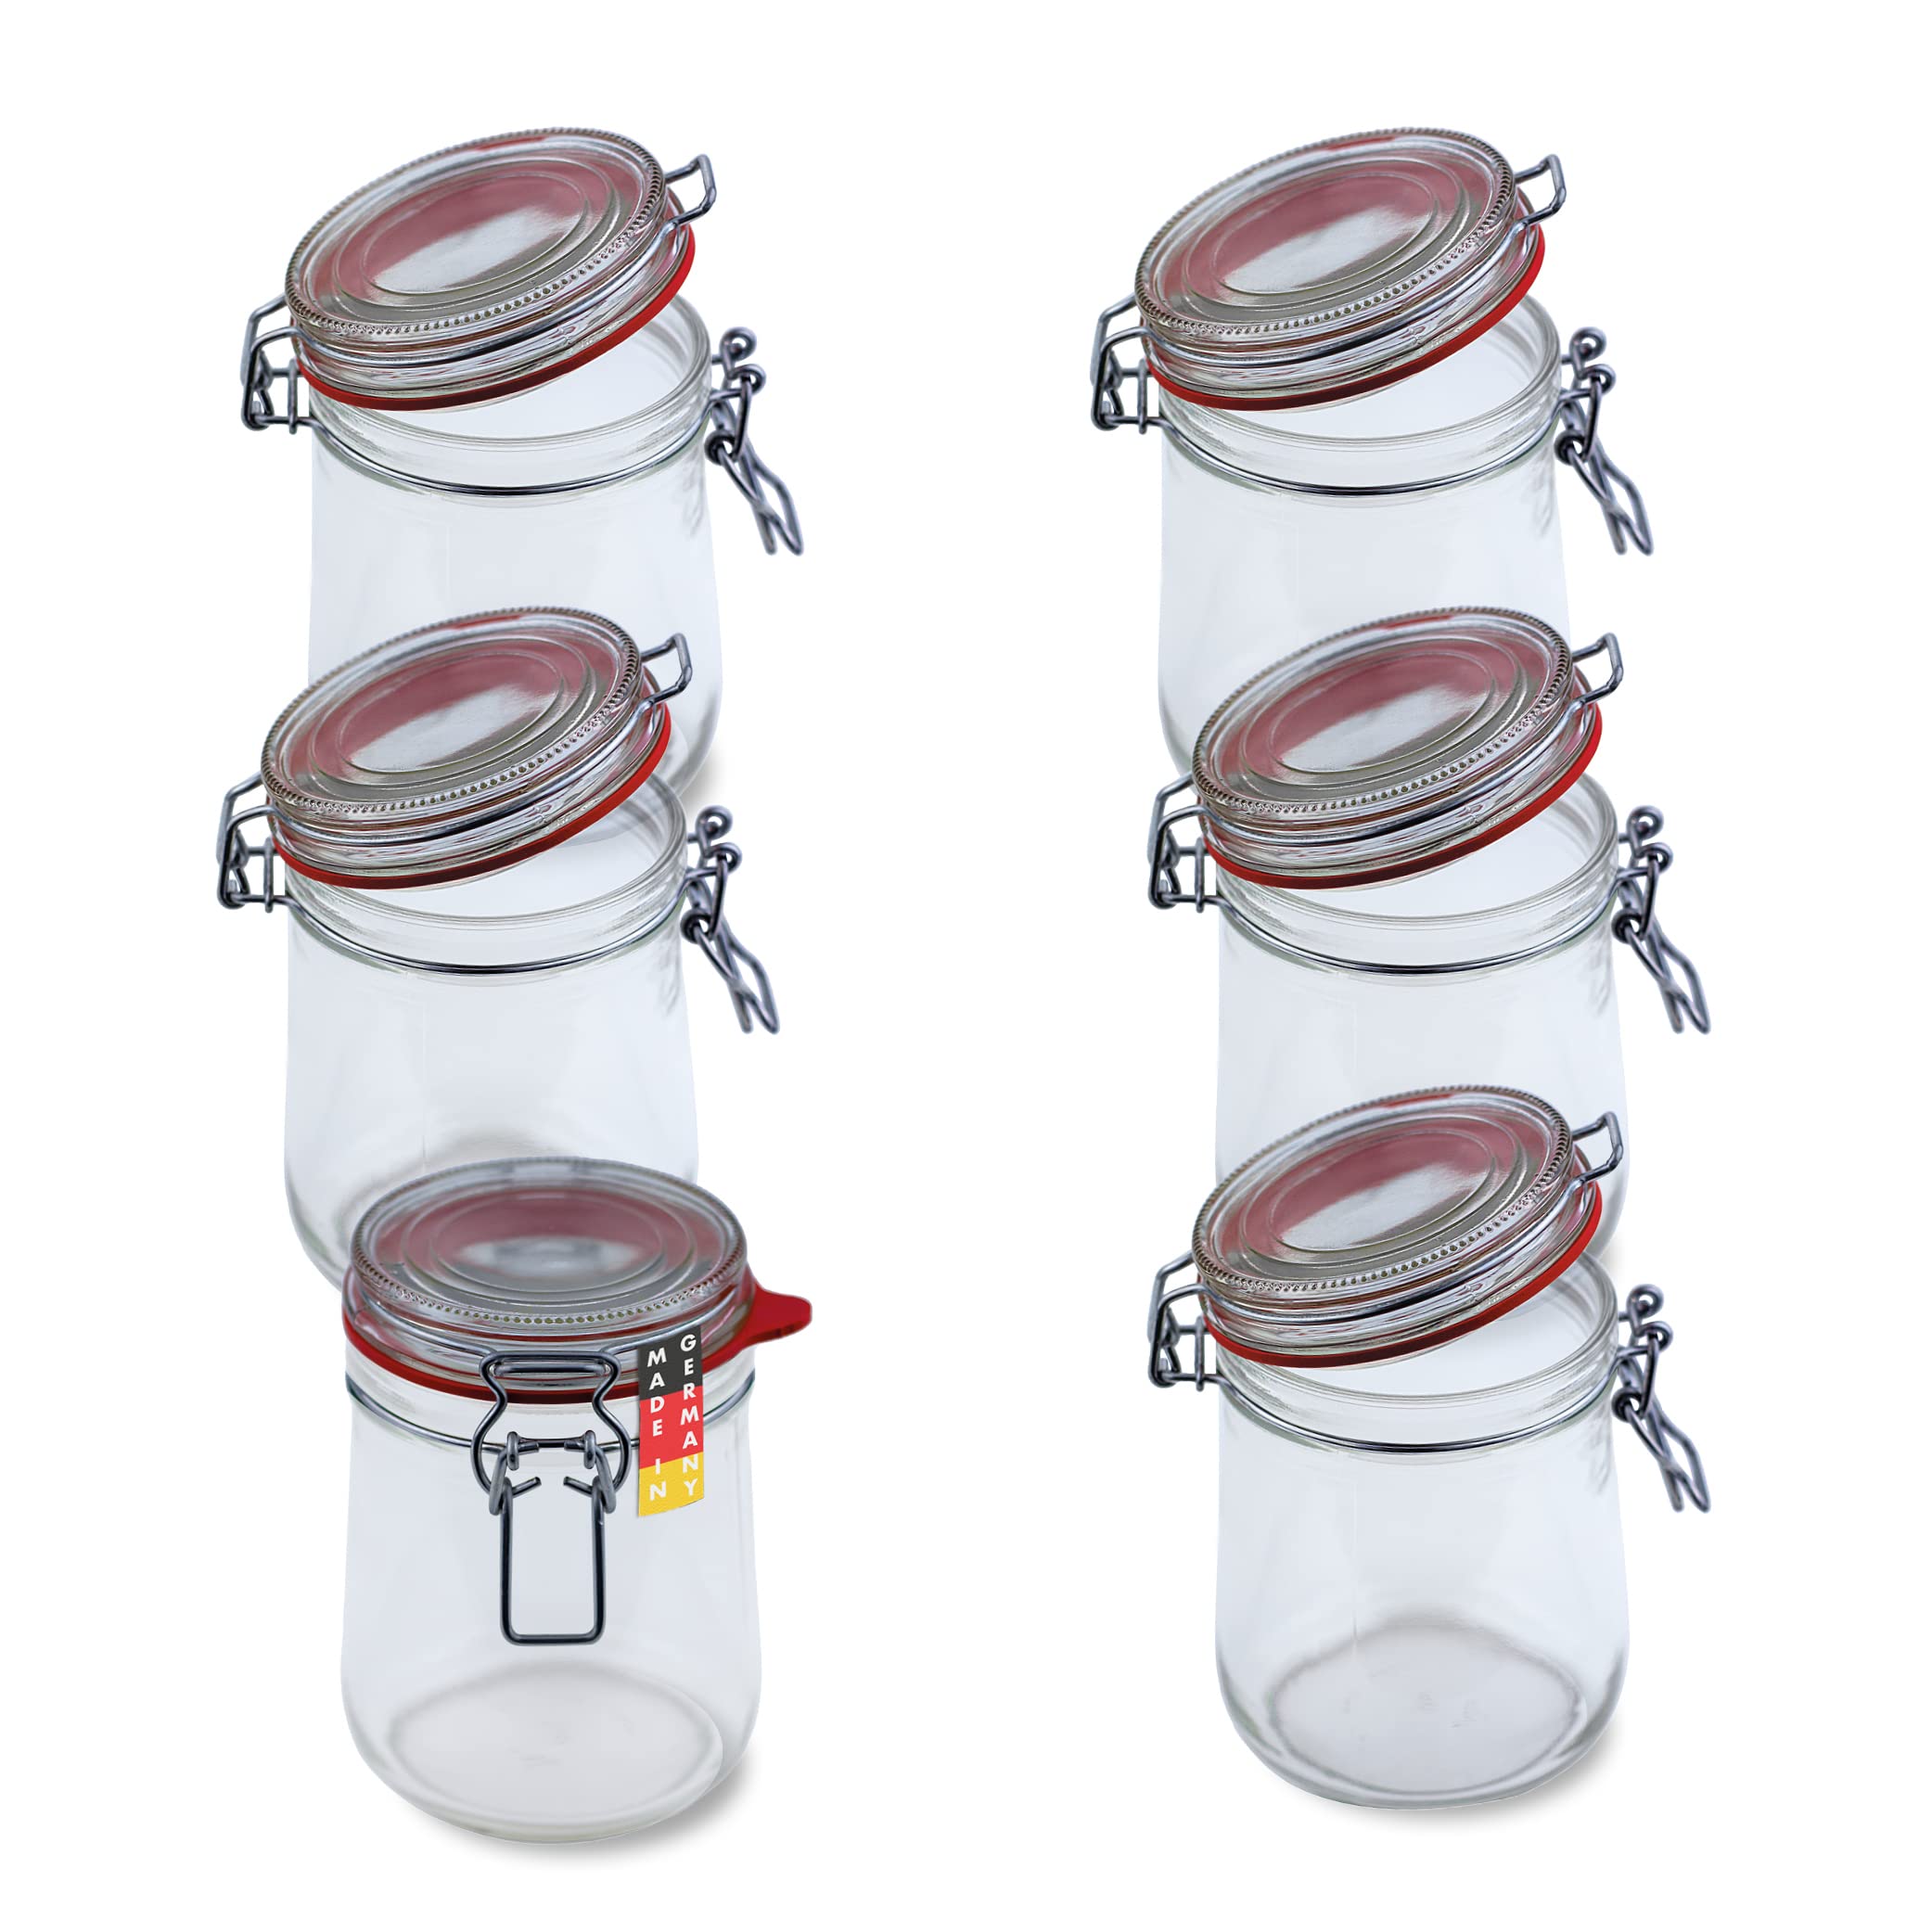 Flaschenbauer- 6 Drahtbügelgläser 800ml verwendbar als Einmachglas und Fermentierglas, zu Aufbewahrung, Gläser zum Befüllen, Leere Gläser mit Drahtbügel mit Weißen und Roten Dichtungsringen